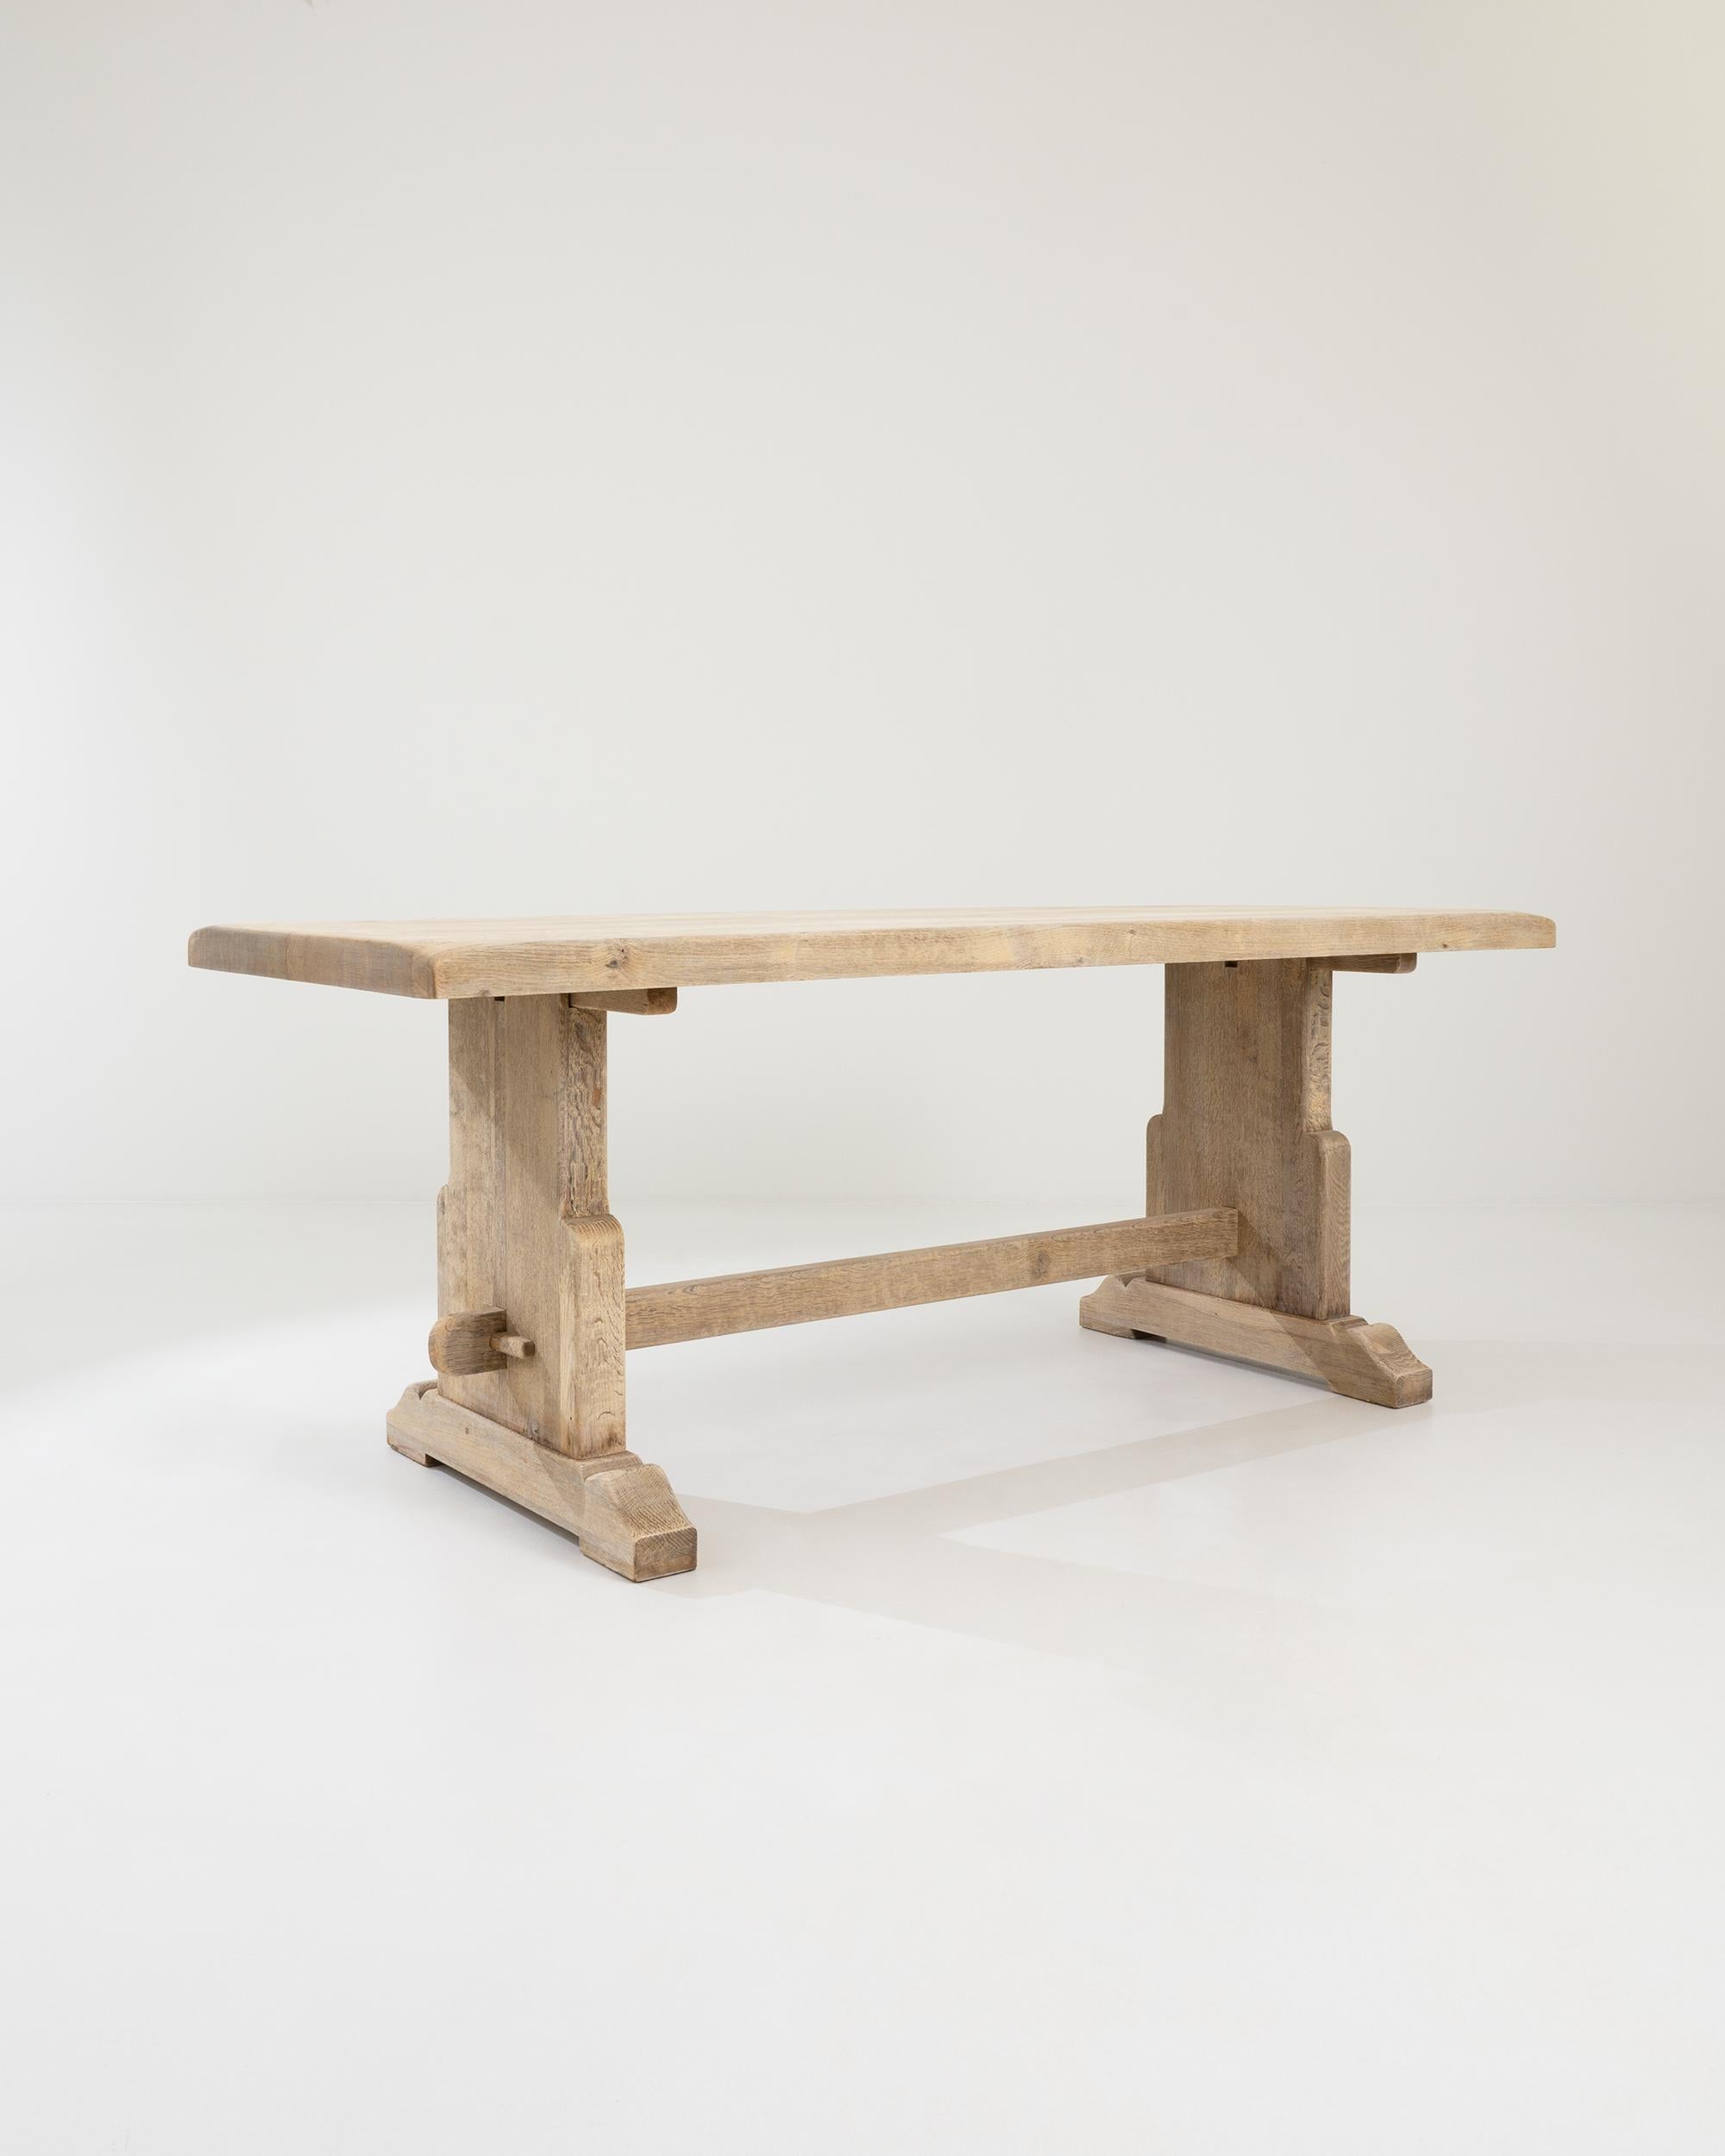 Table de salle à manger en bois créée en Belgique au XXe siècle. Caractéristique du design belge traditionnel, cette table est de construction robuste et présente un aspect résolument utilitaire. D'épaisses dalles de chêne, judicieusement